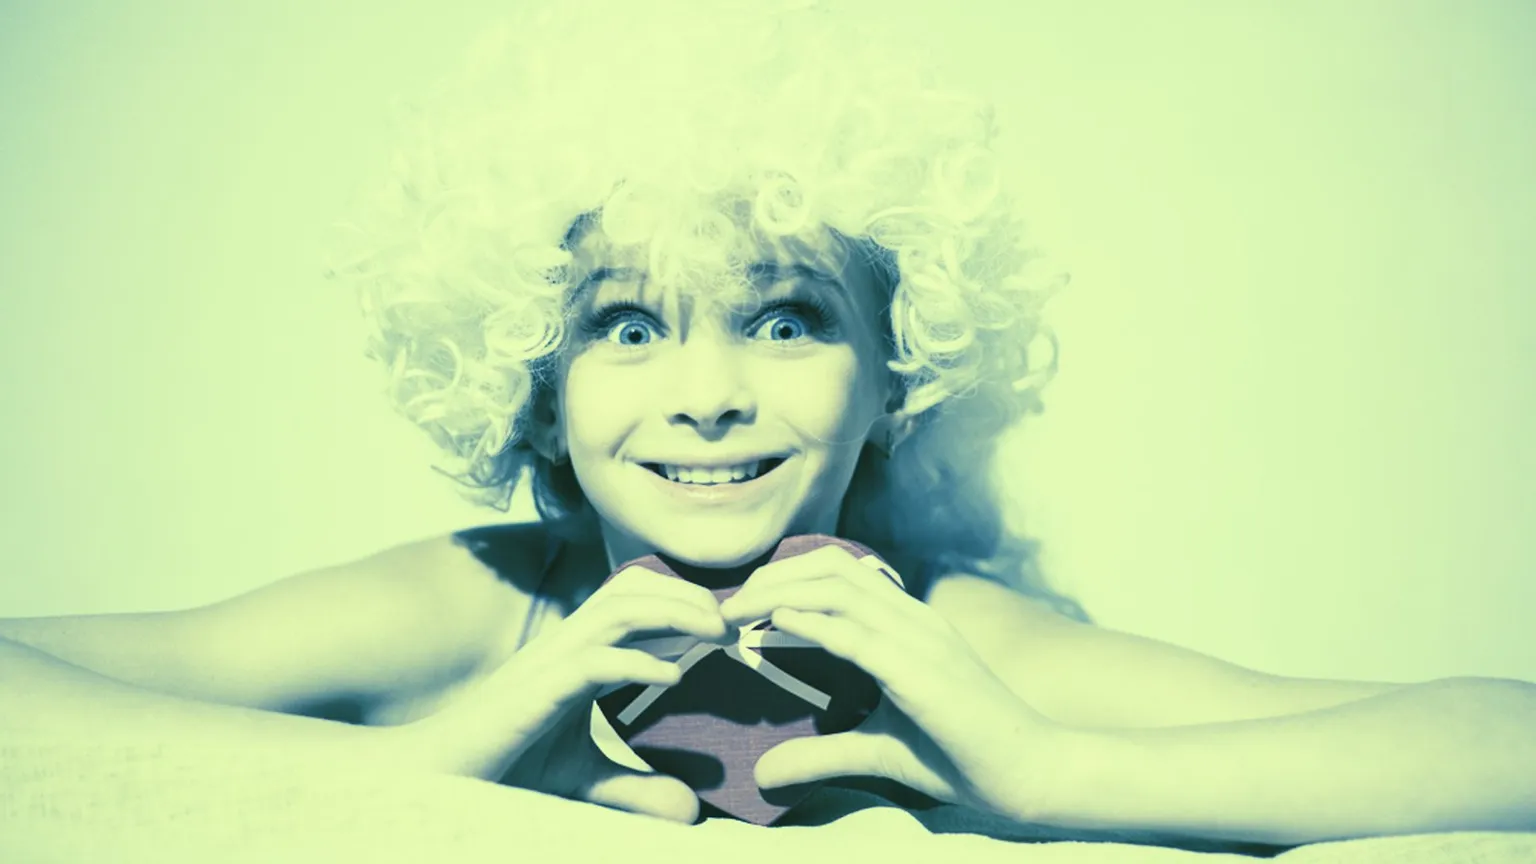 El amor es una cosa muy espléndida. Vía Shutterstock